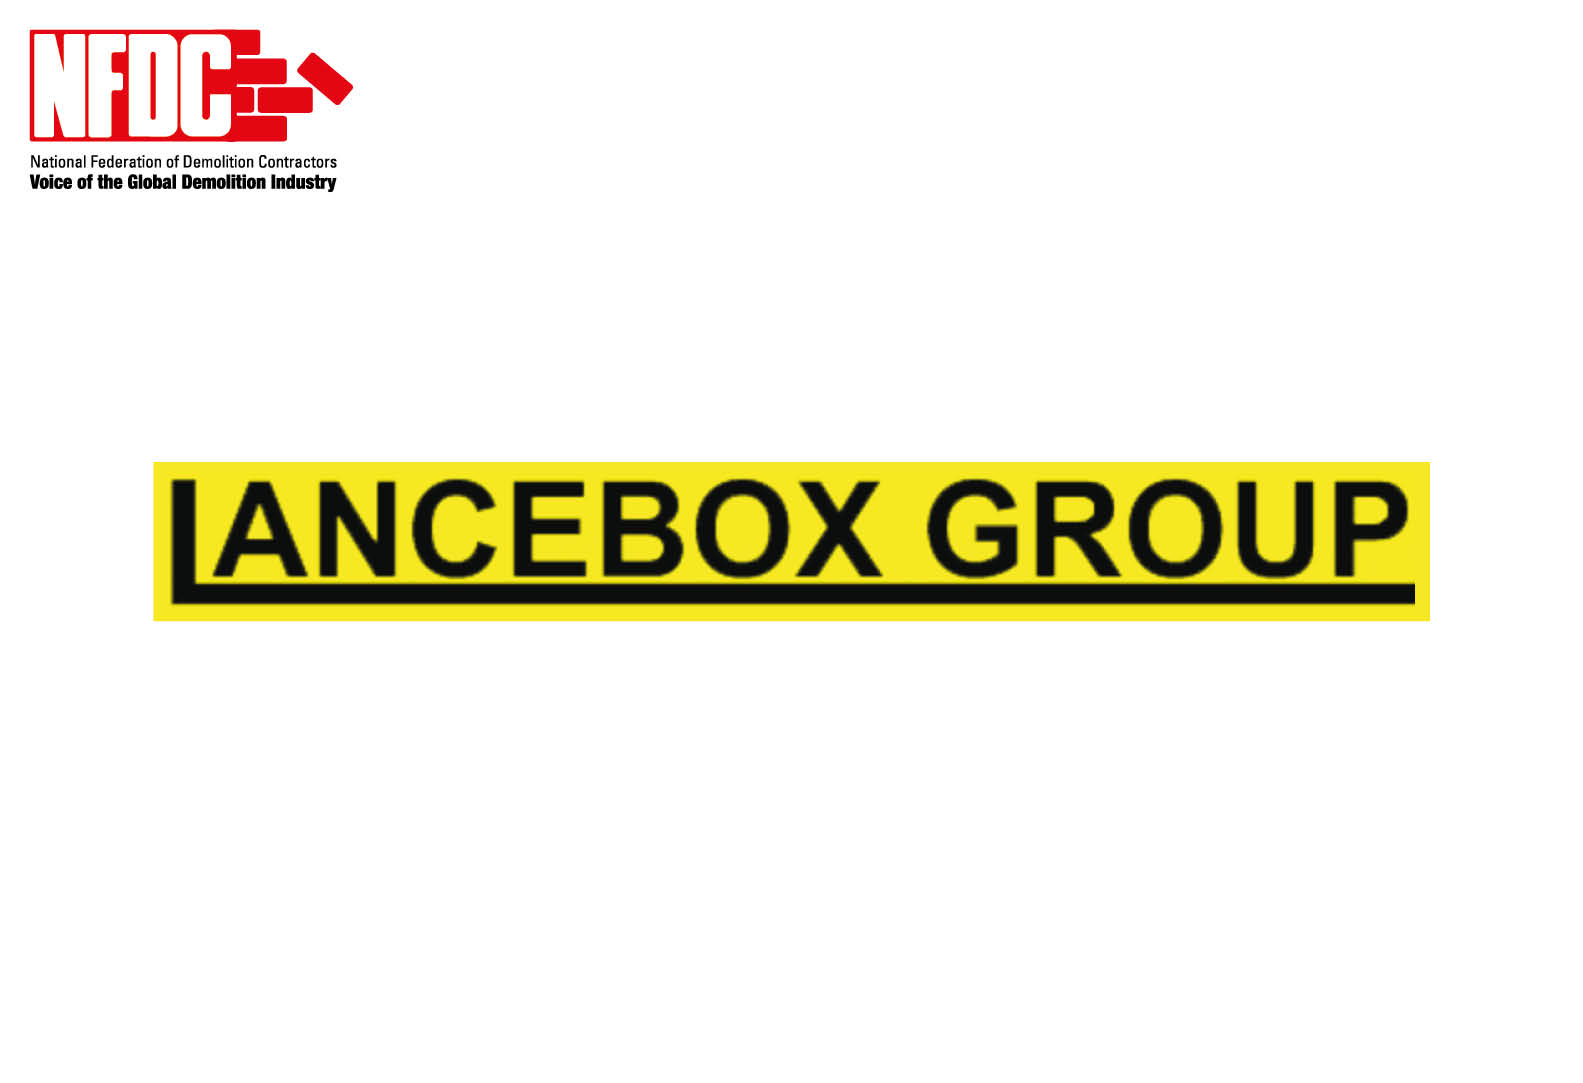 Lancebox Ltd